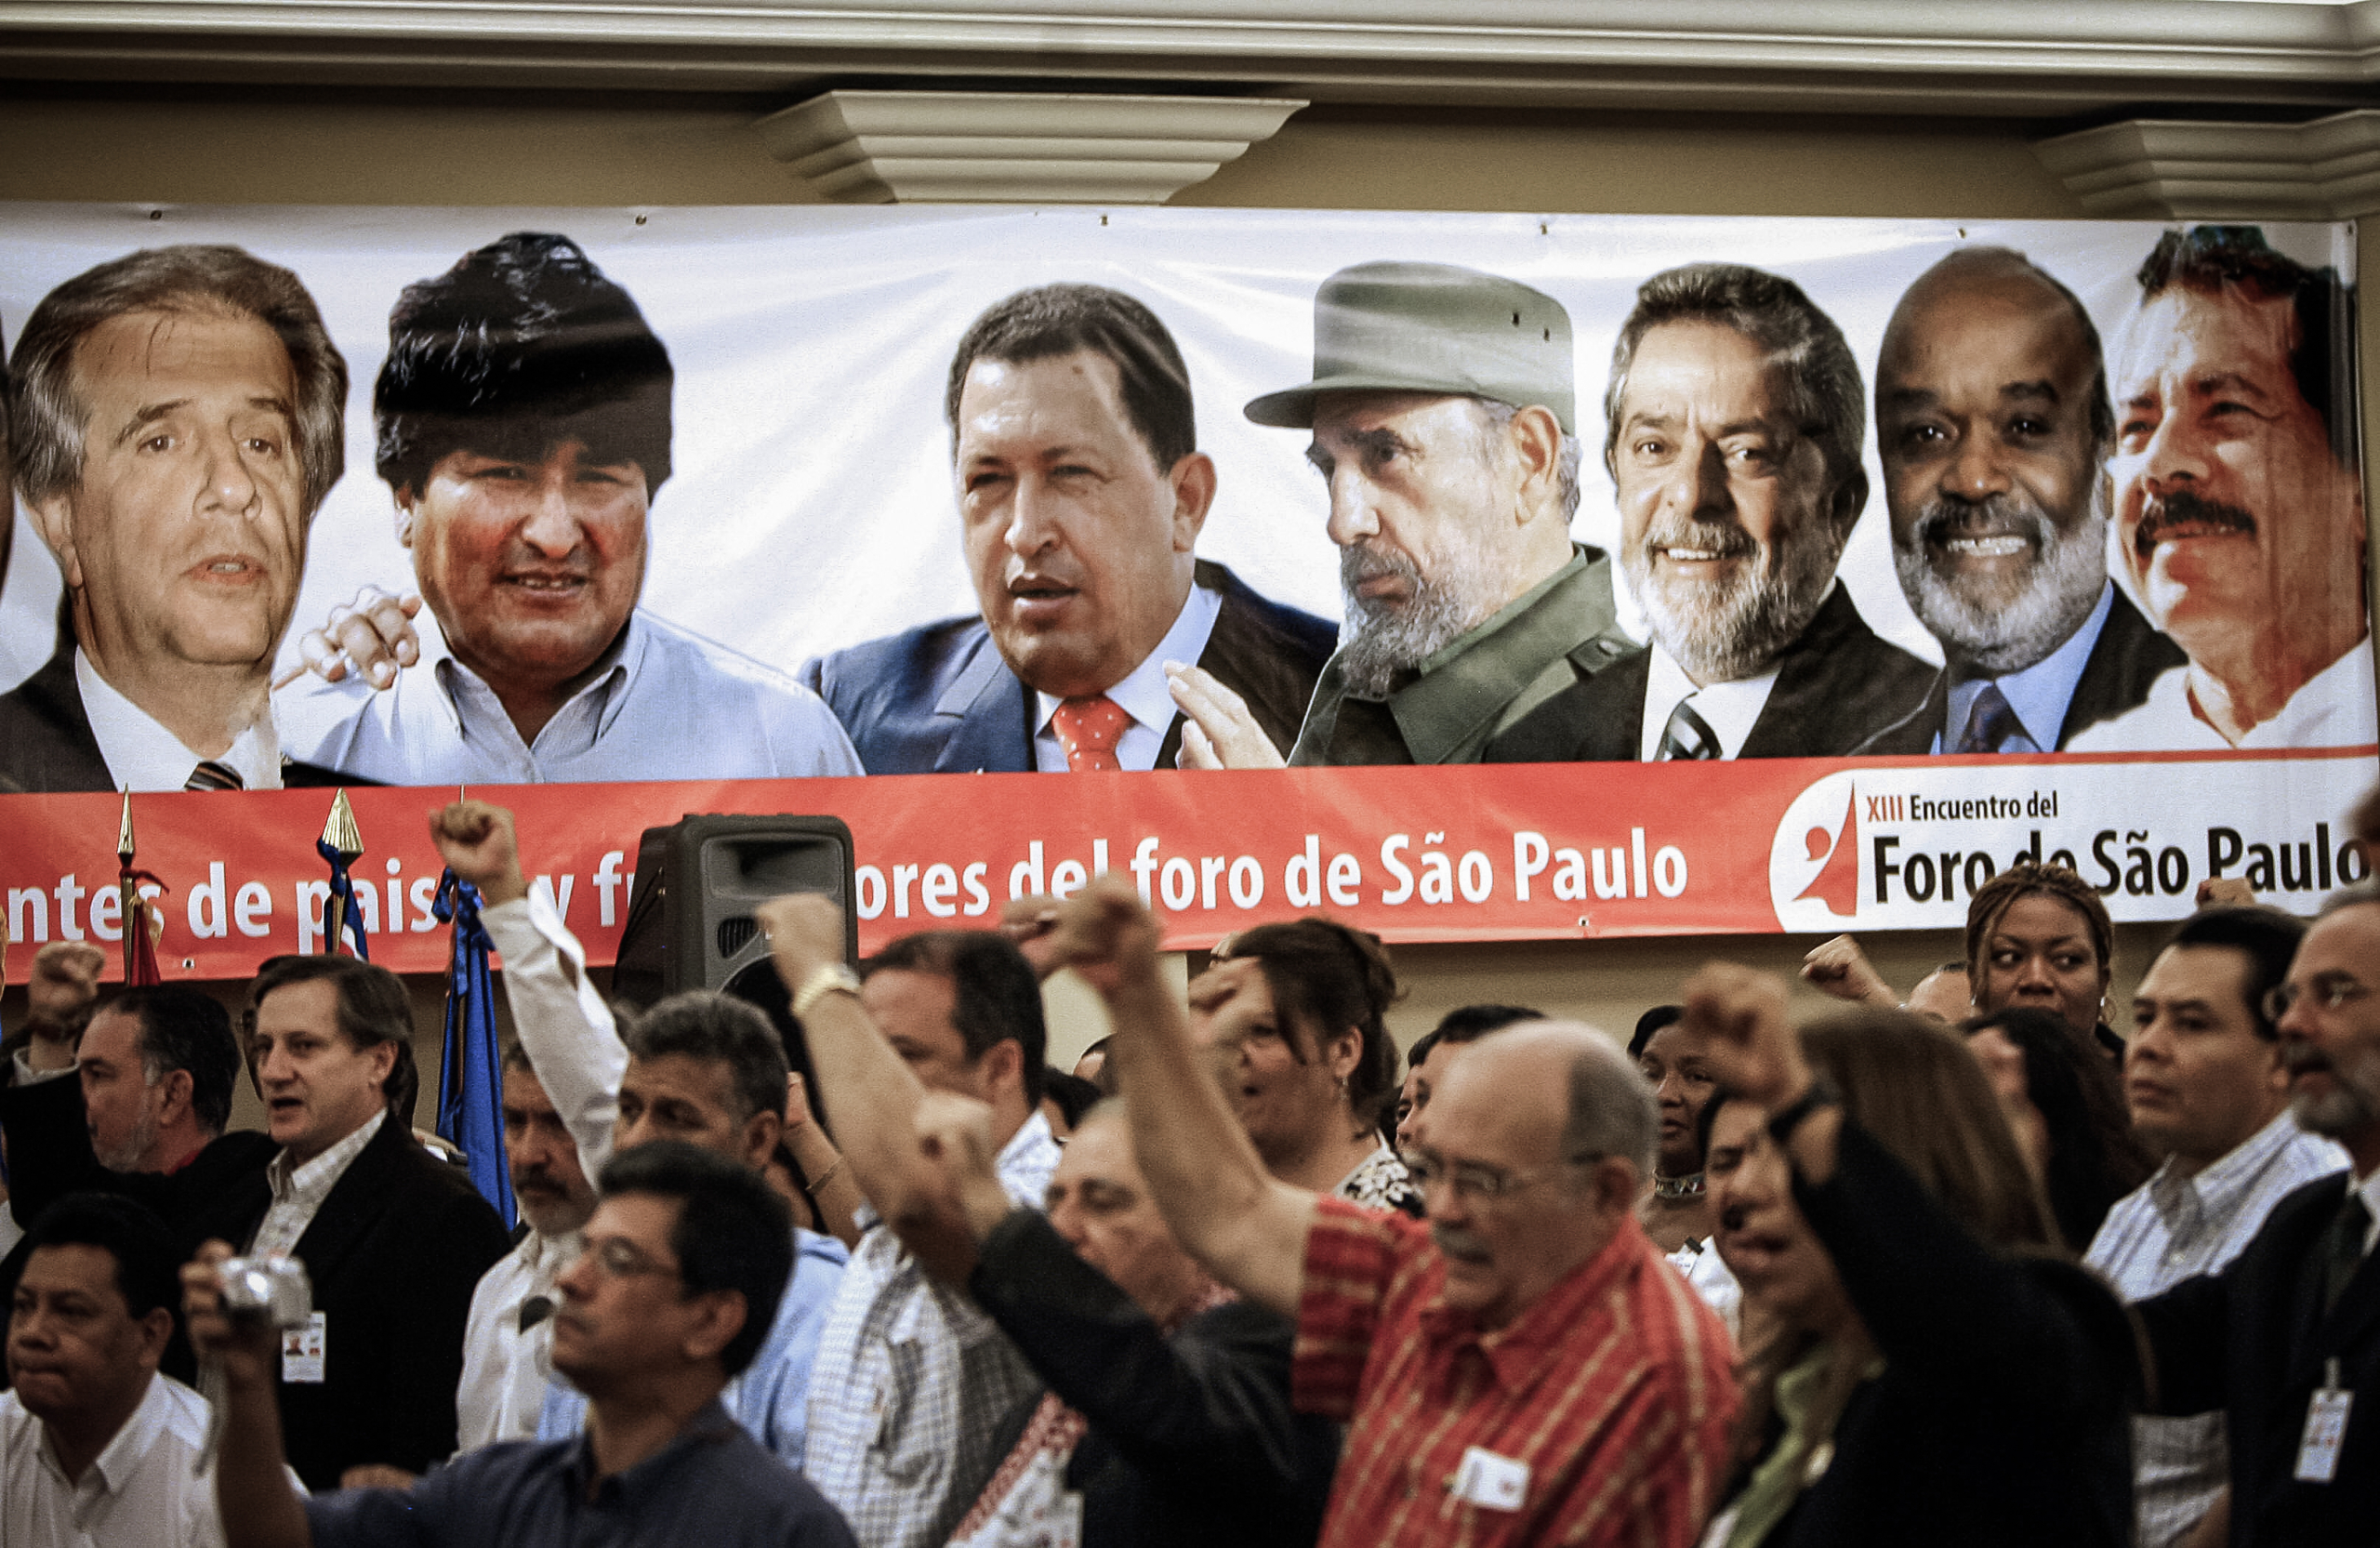 Những người tham dự hô khẩu hiệu trong lễ khai mạc Diễn đàn Sao Paulo, bên cạnh một biểu ngữ có chân dung của các tổng thống cánh tả Mỹ Latinh, ở San Salvador, El Salvador, vào ngày 12/01/2007. (Ảnh: Yuri Cortez/AFP qua Getty Images)